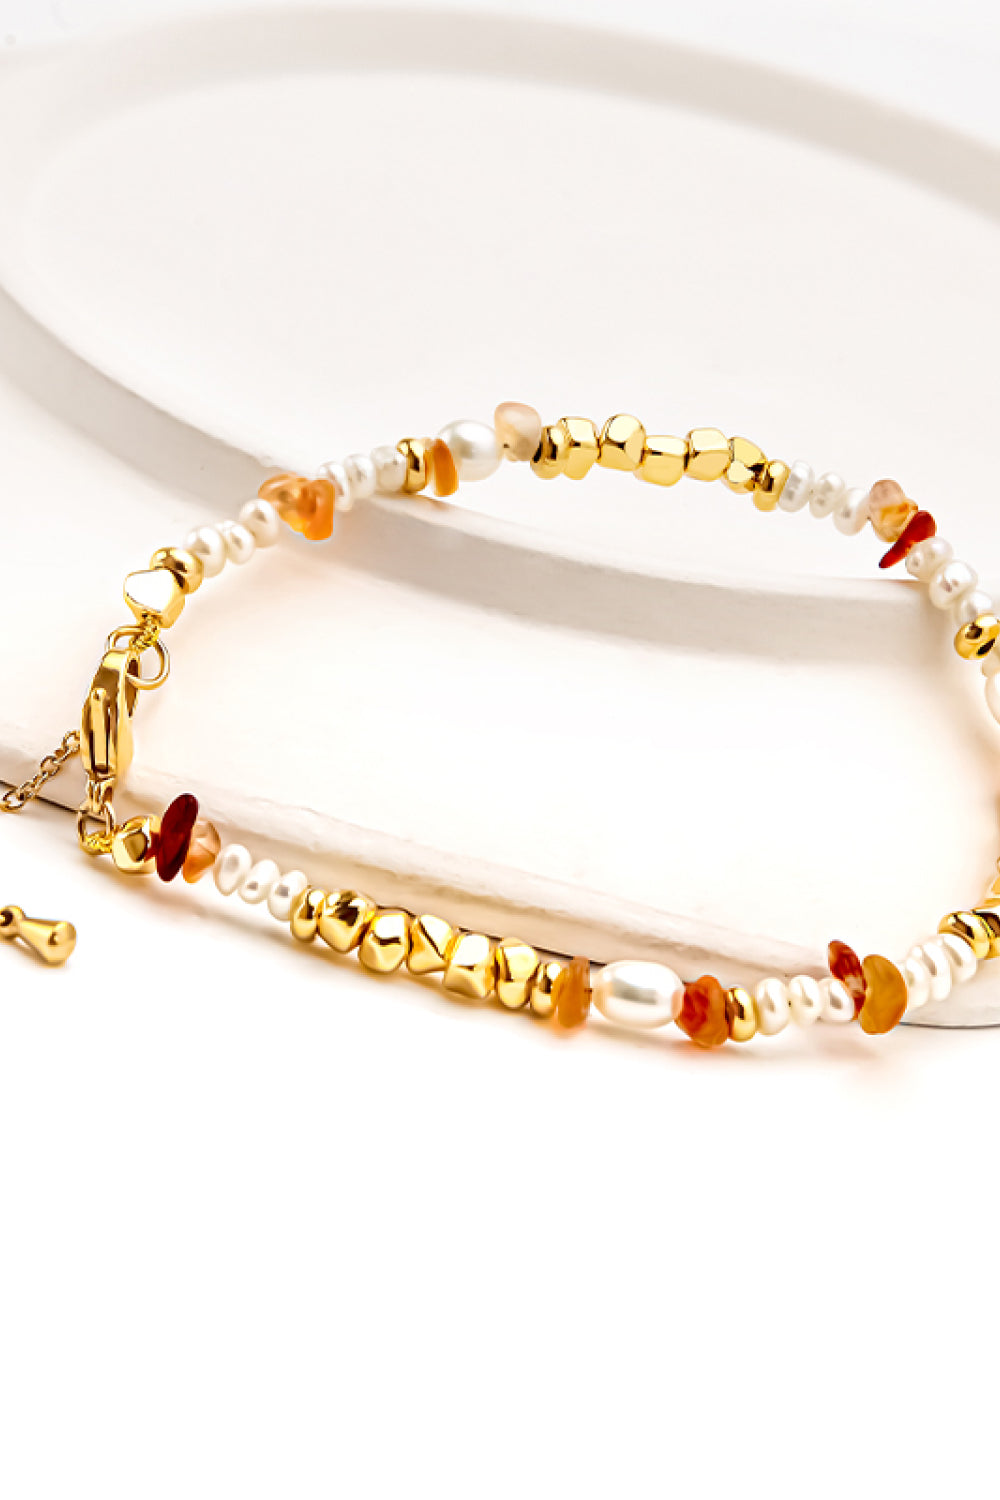 Freshwater Pearl Zinc Alloy Bracelet - Gold / One Size - Women’s Jewelry - Bracelets - 4 - 2024